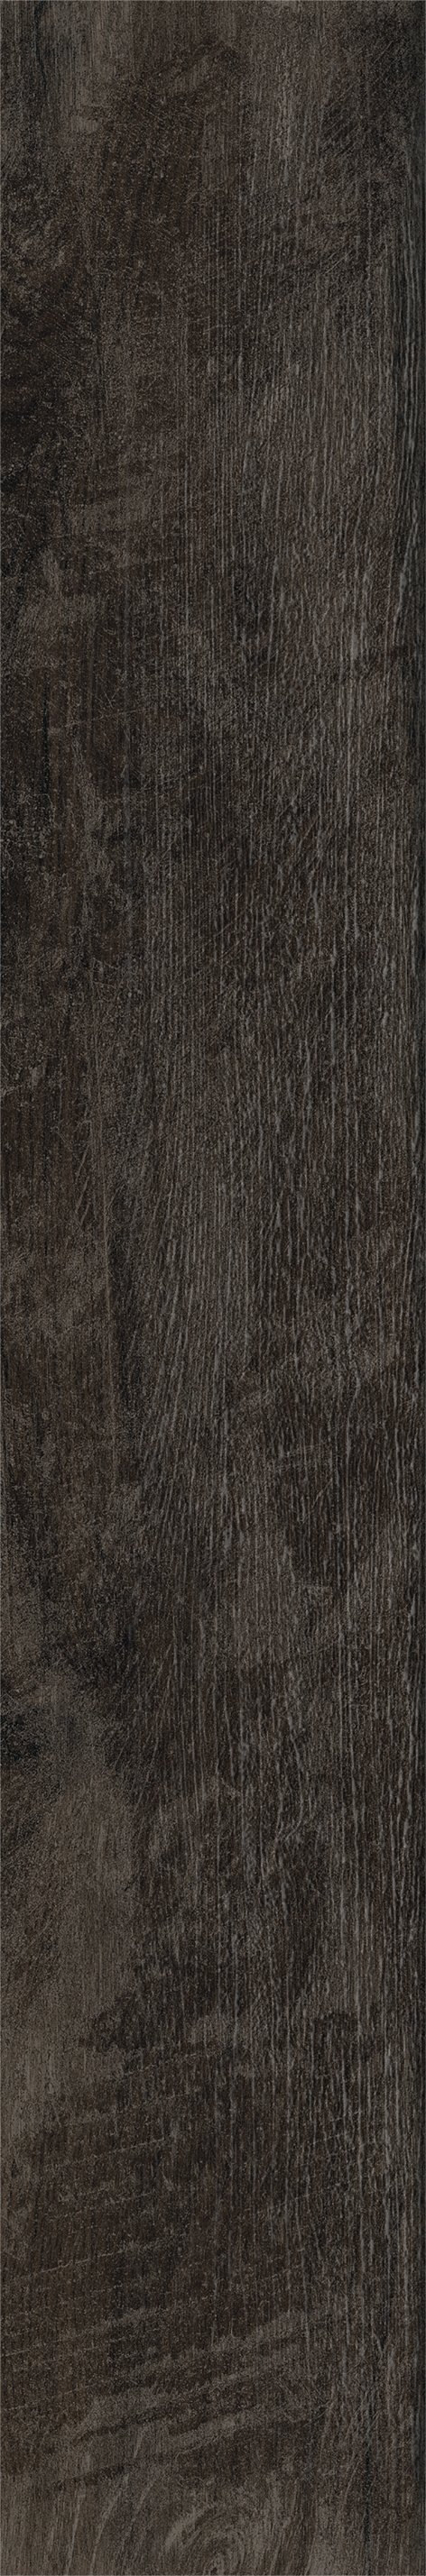 Плитка из керамогранита матовая Italon Грув 20x120 коричневый (610010001884) плитка из керамогранита матовая italon грув 9 5x60 бежевый 610010001886